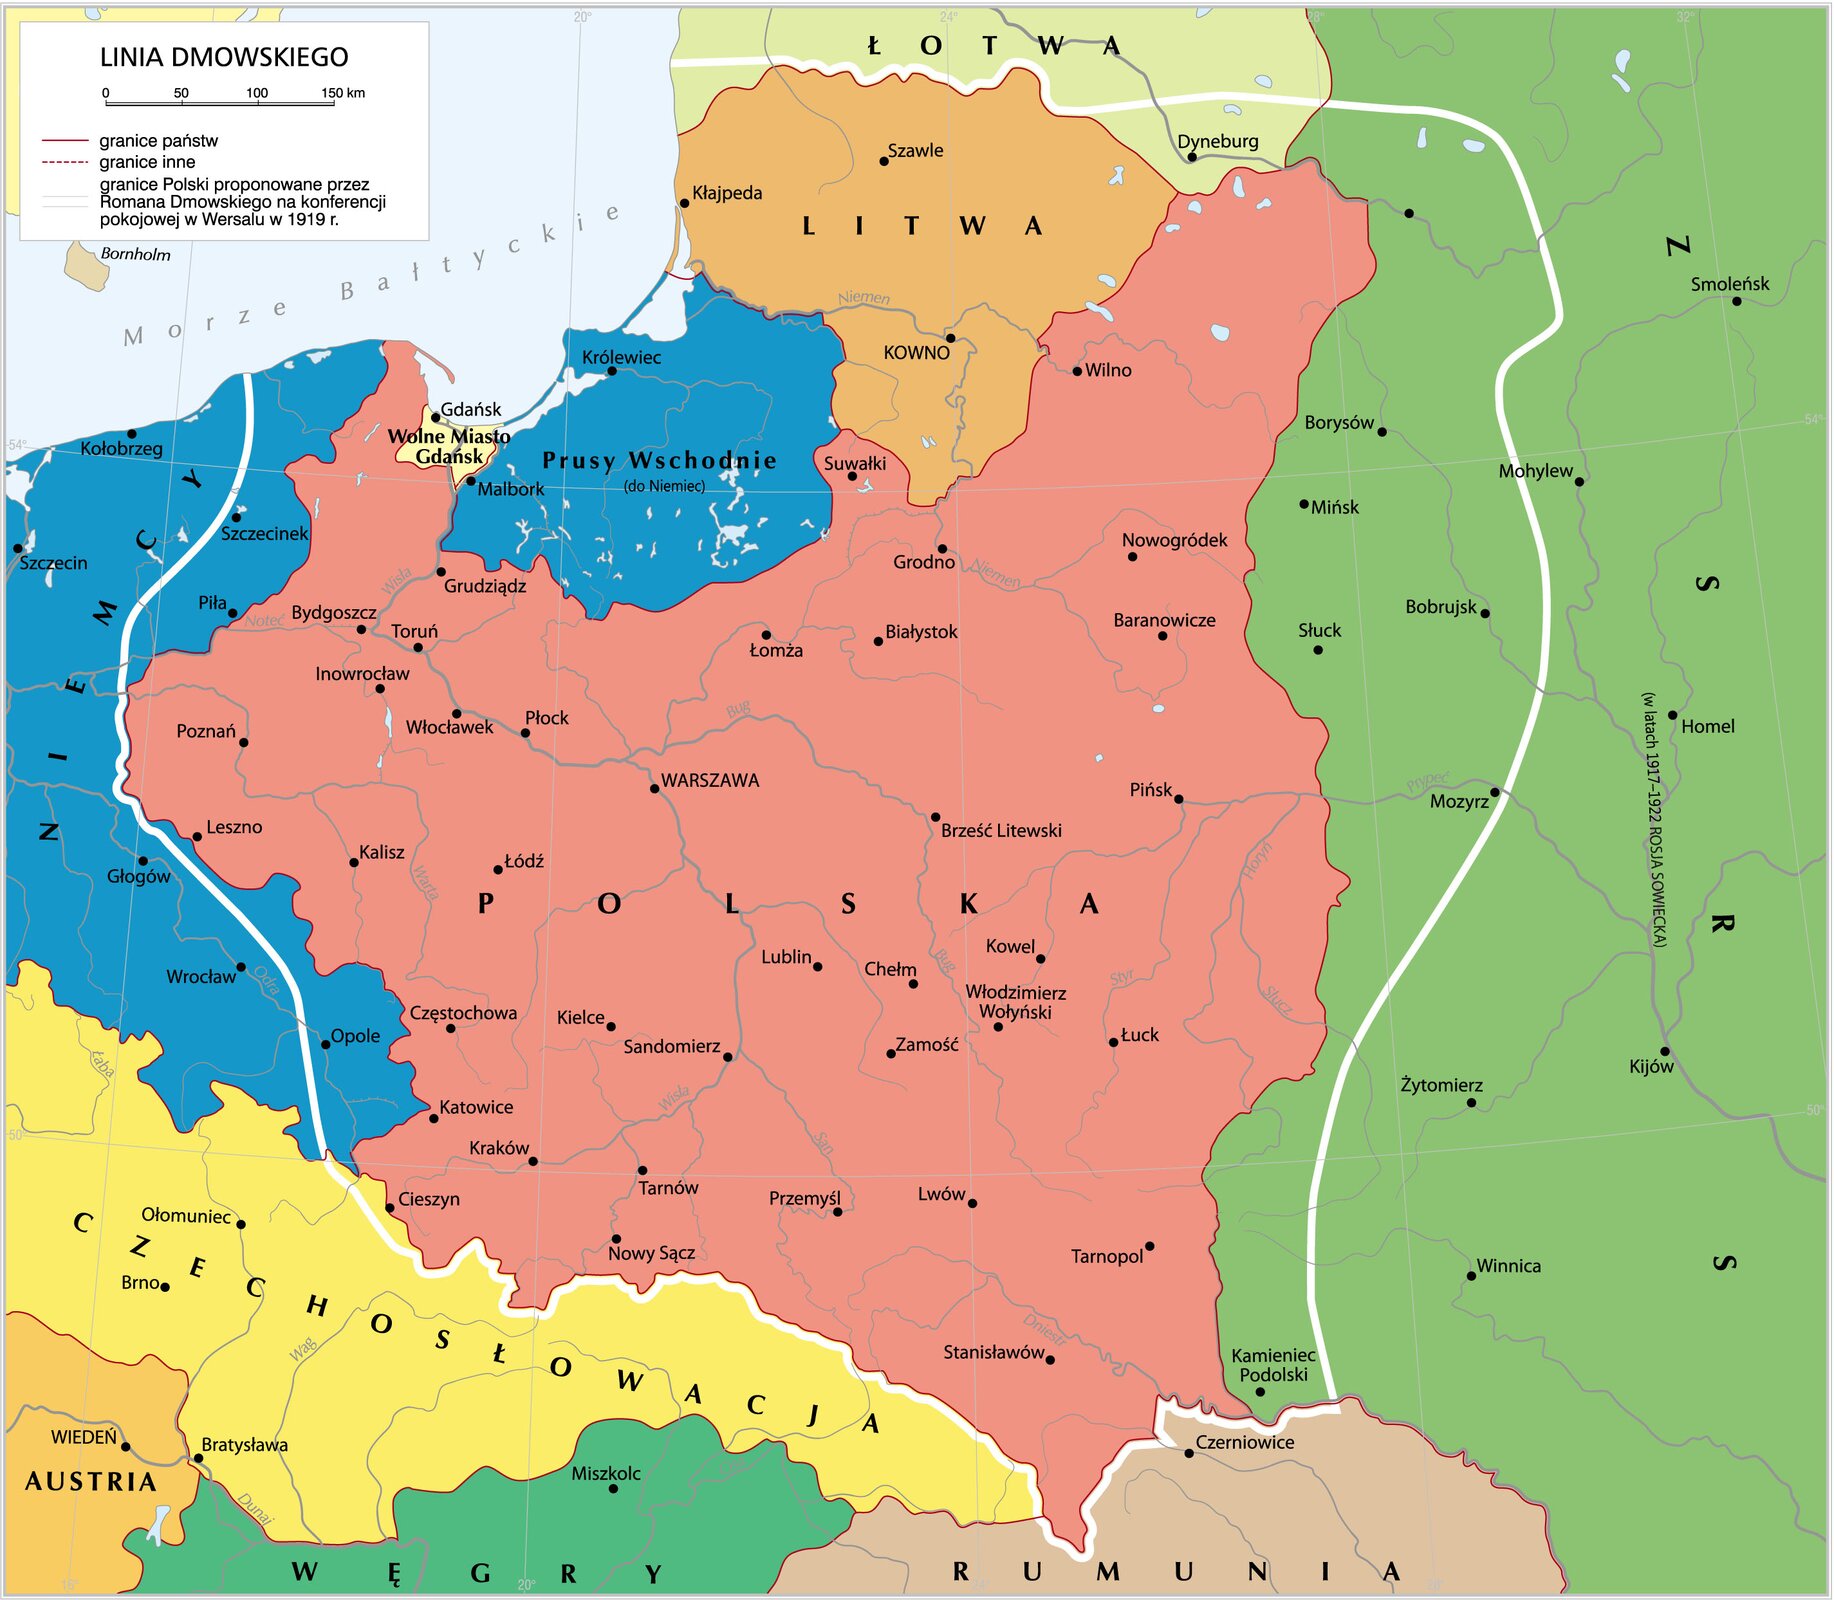 Mapa Linia Dmowskiego. Zawiera informacje o granicach Polski, proponowanych przez Romana Dmowskiego.